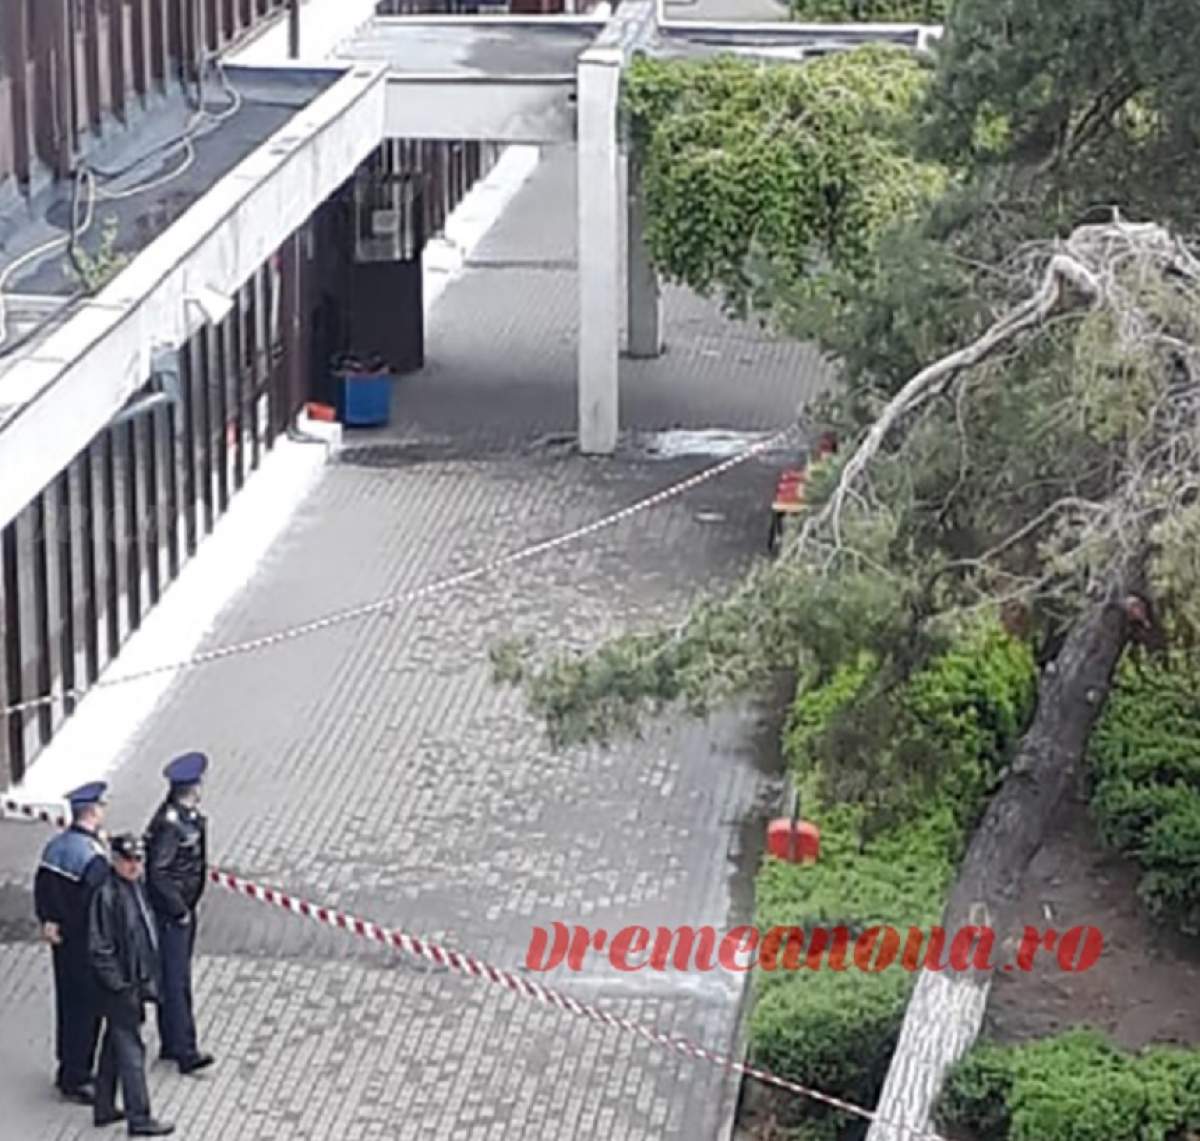 Panică într-o gară din România, după ce a fost găsit un colet suspect. Polițiștii acționează de urgență